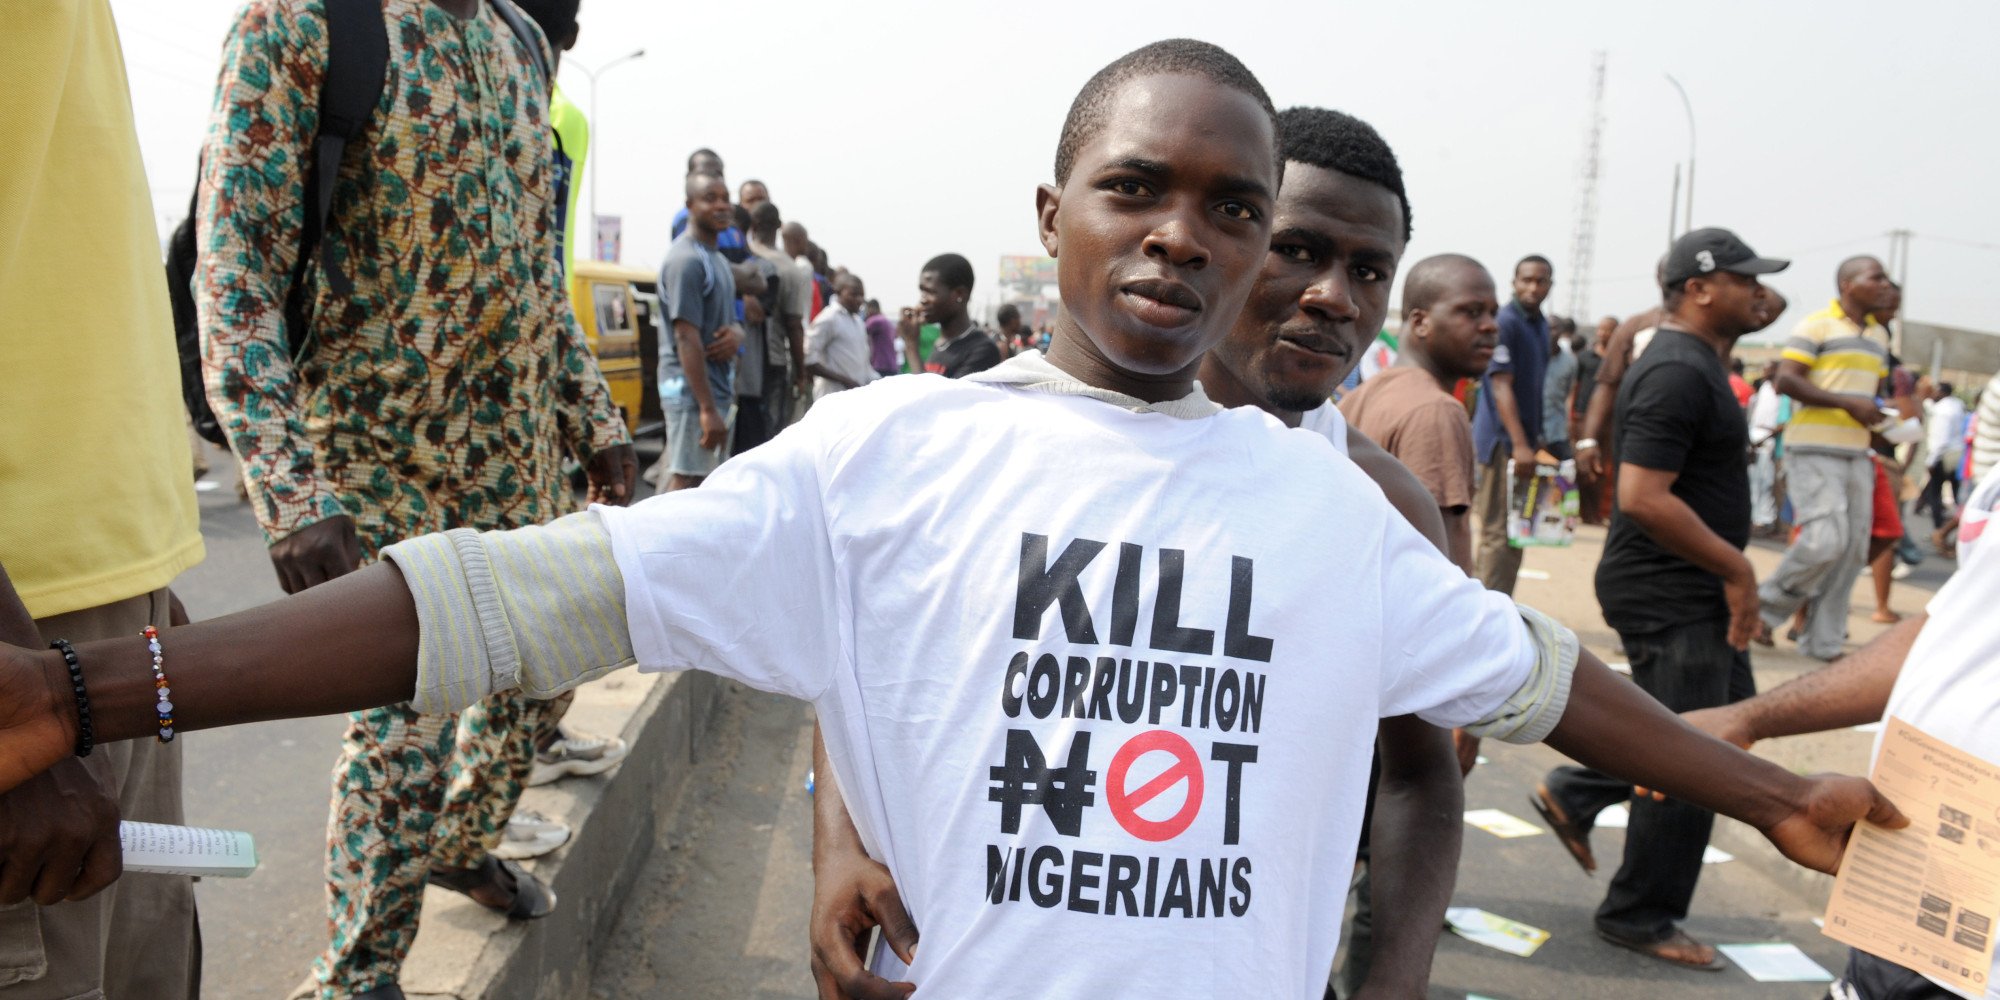 Νιγηρία: Υπεξαίρεση-μαμούθ 6 δισ. δολαρίων από υπουργό της προηγούμενης κυβέρνησης